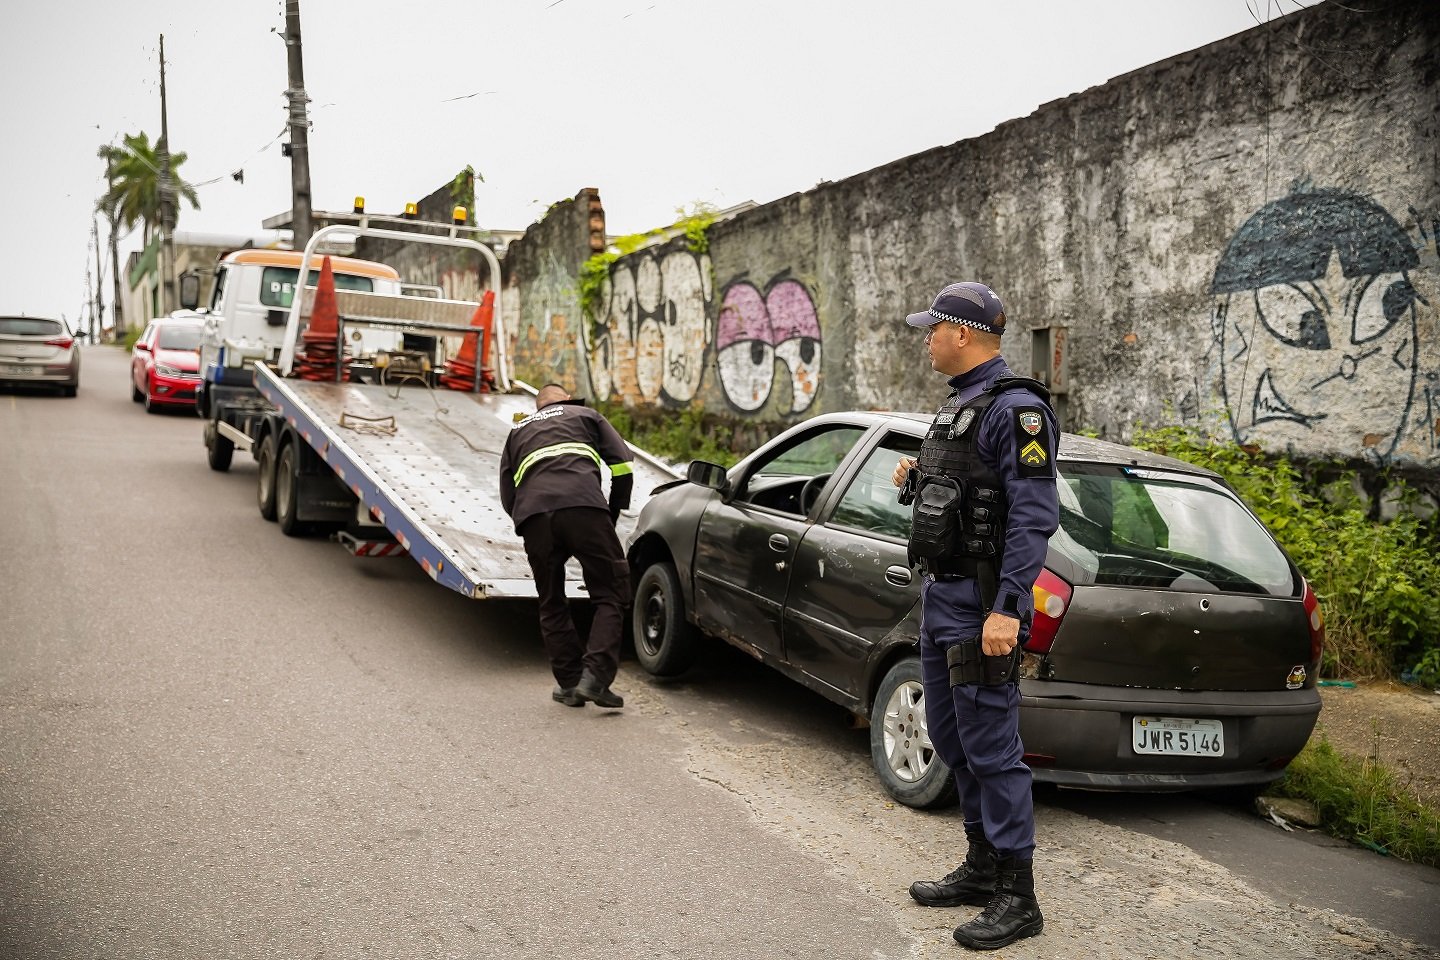 Veículo recuperado durante fiscalização do Detran-AM tinha restrição de roubo - Foto: Isaque Ramos/Divulgação